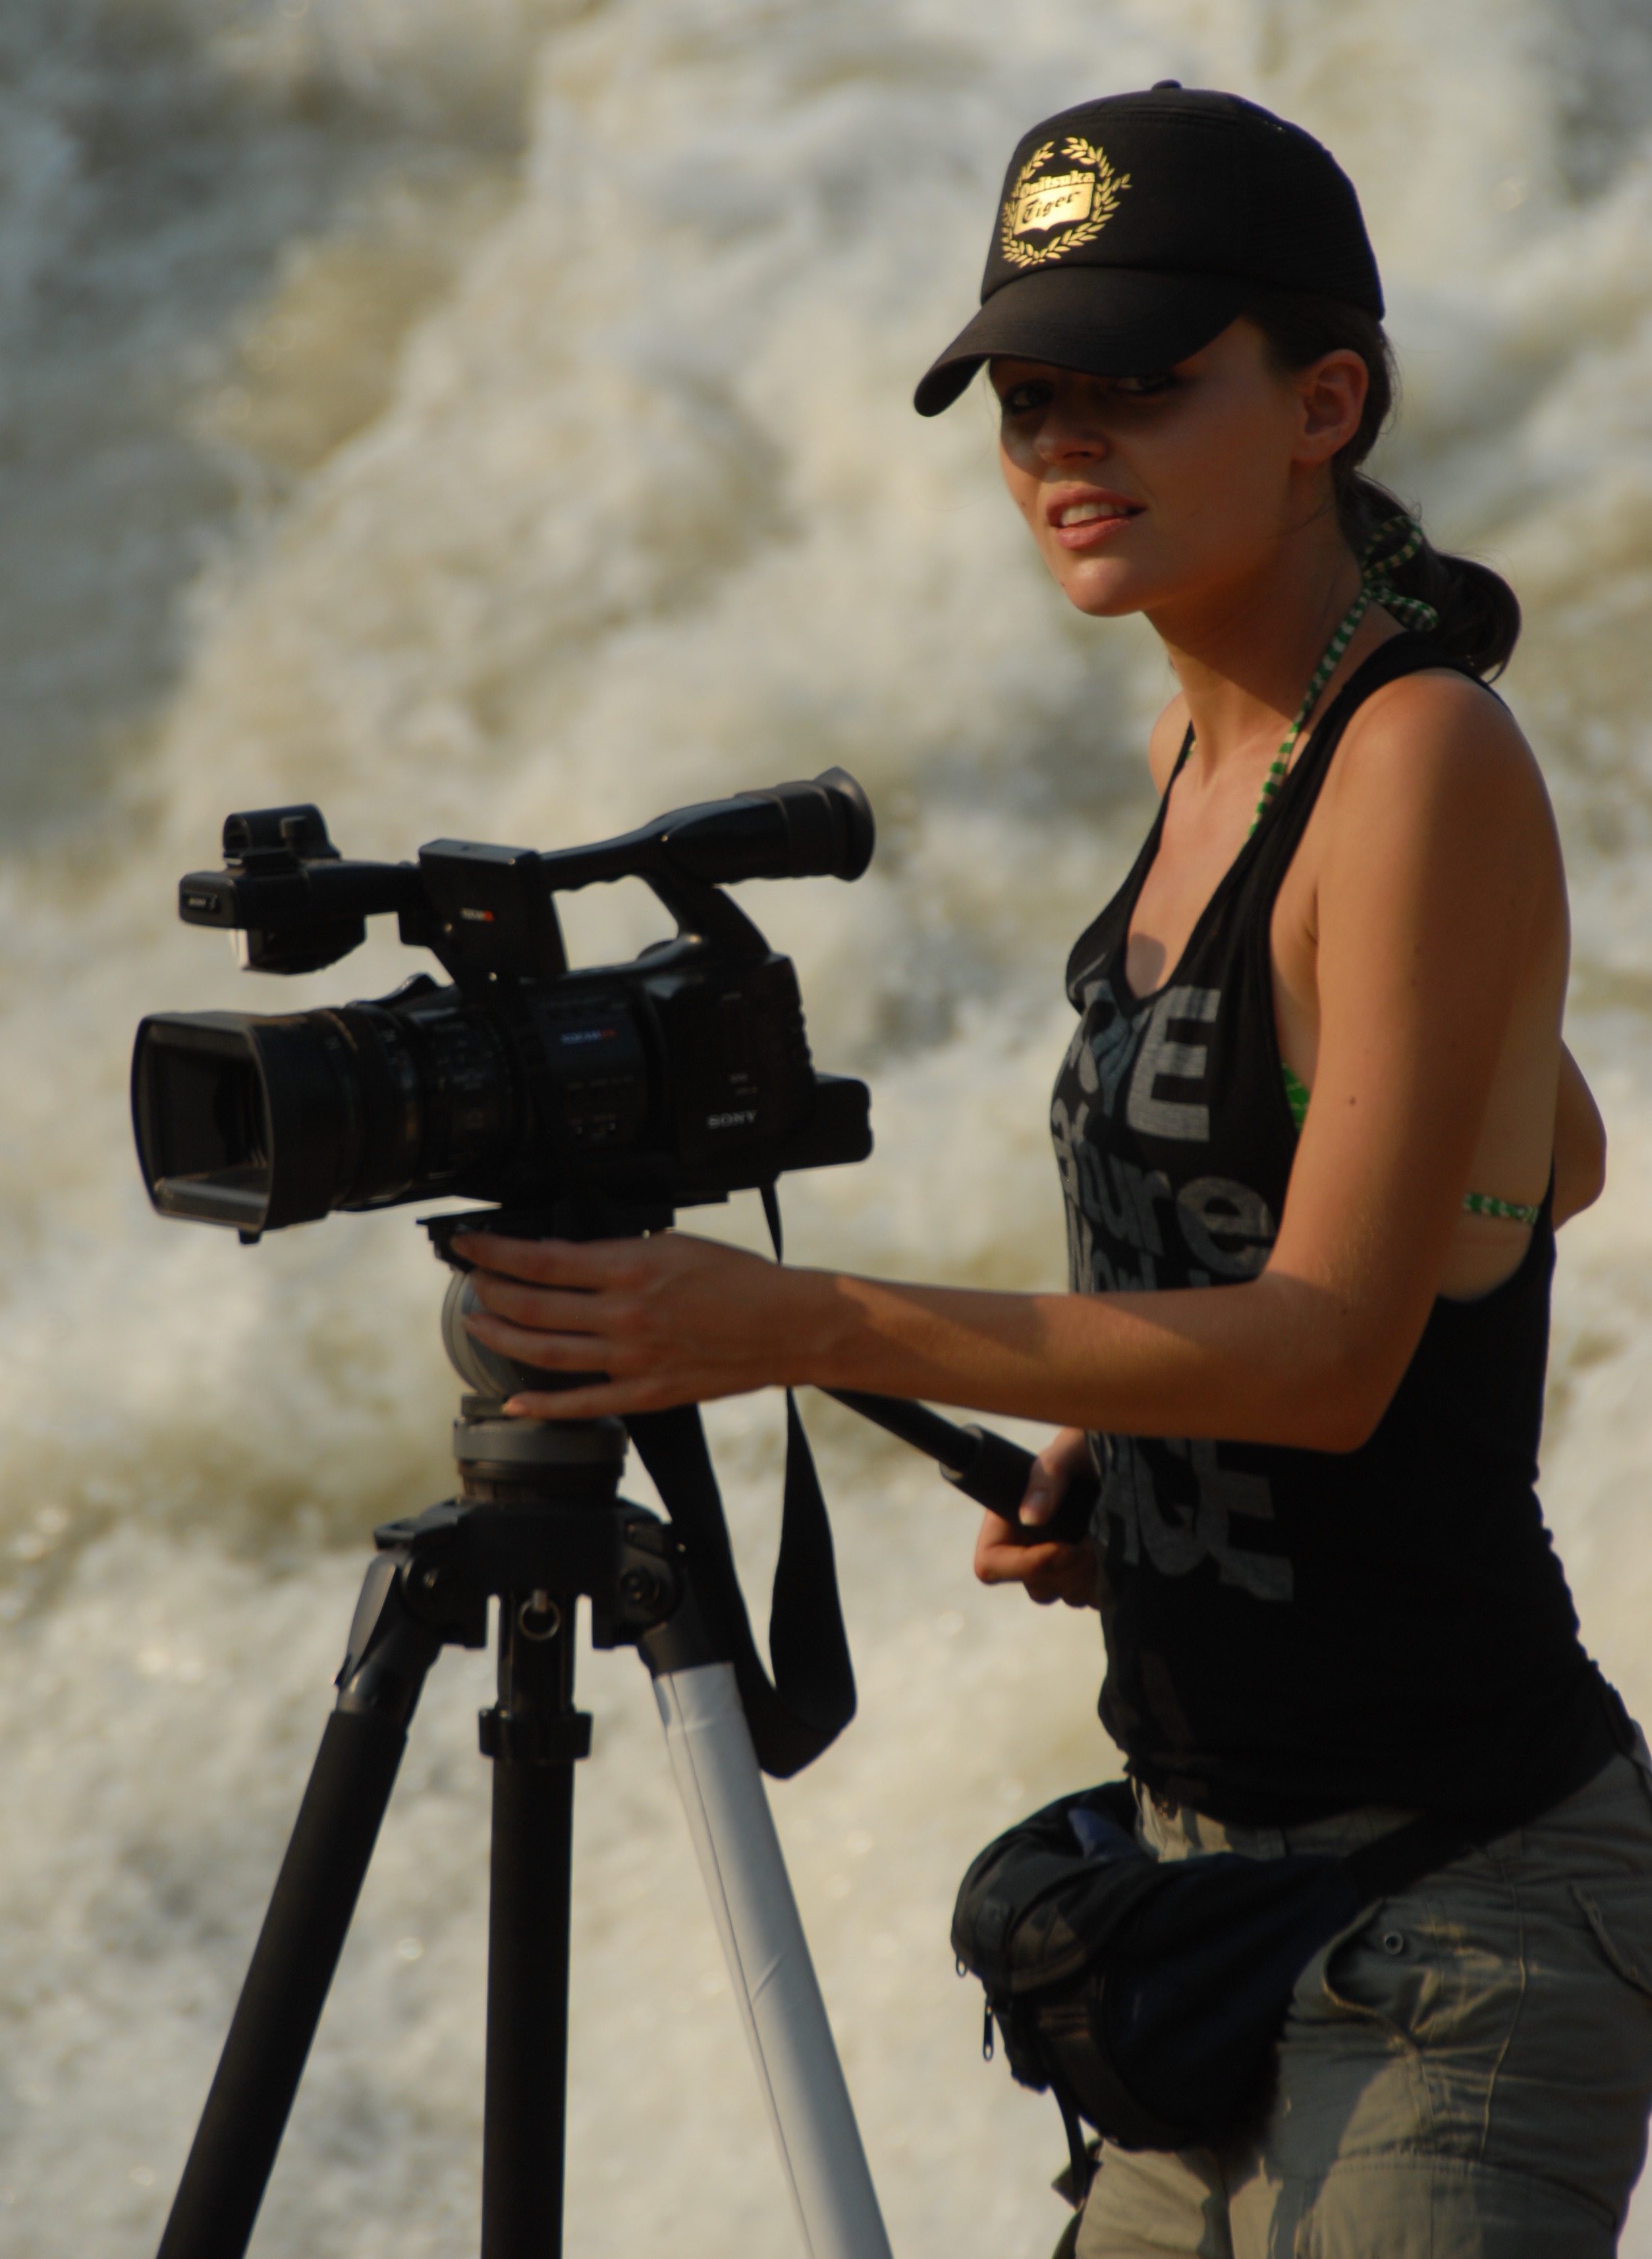 Filming on the Nile River in Uganda, 2009.